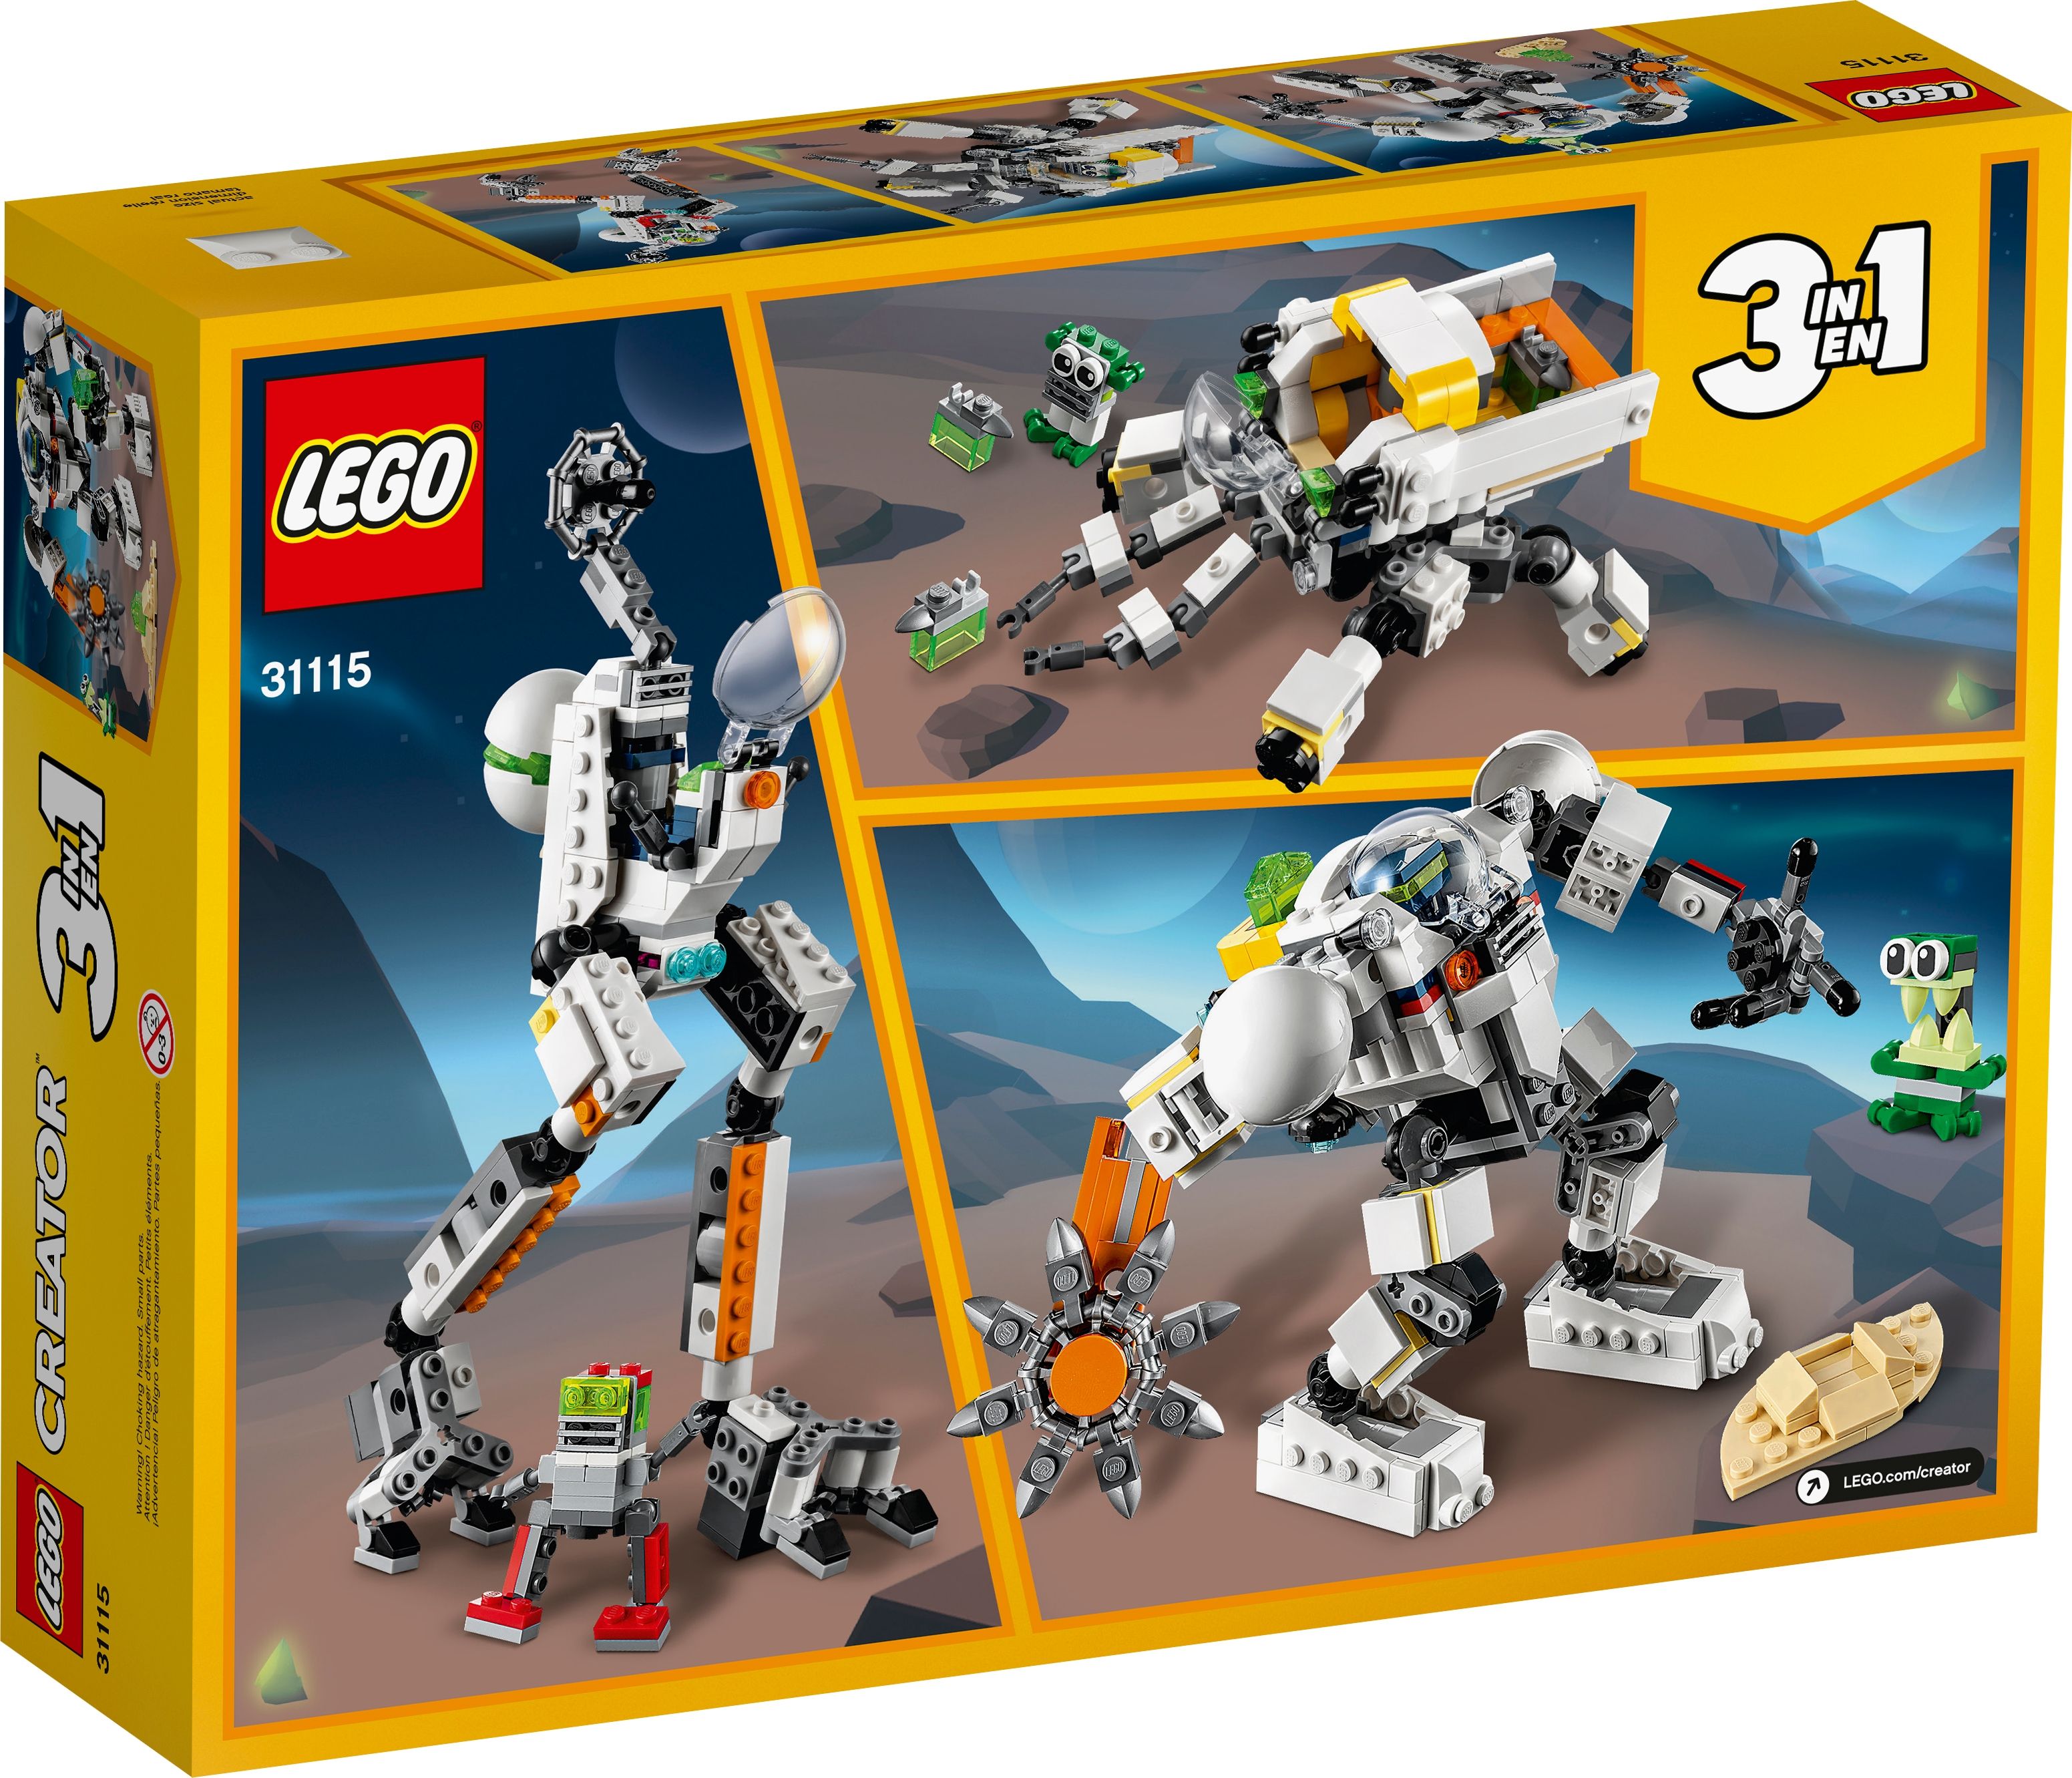 LEGO Creator 31115 Weltraum-Mech LEGO_31115_box5_v39.jpg